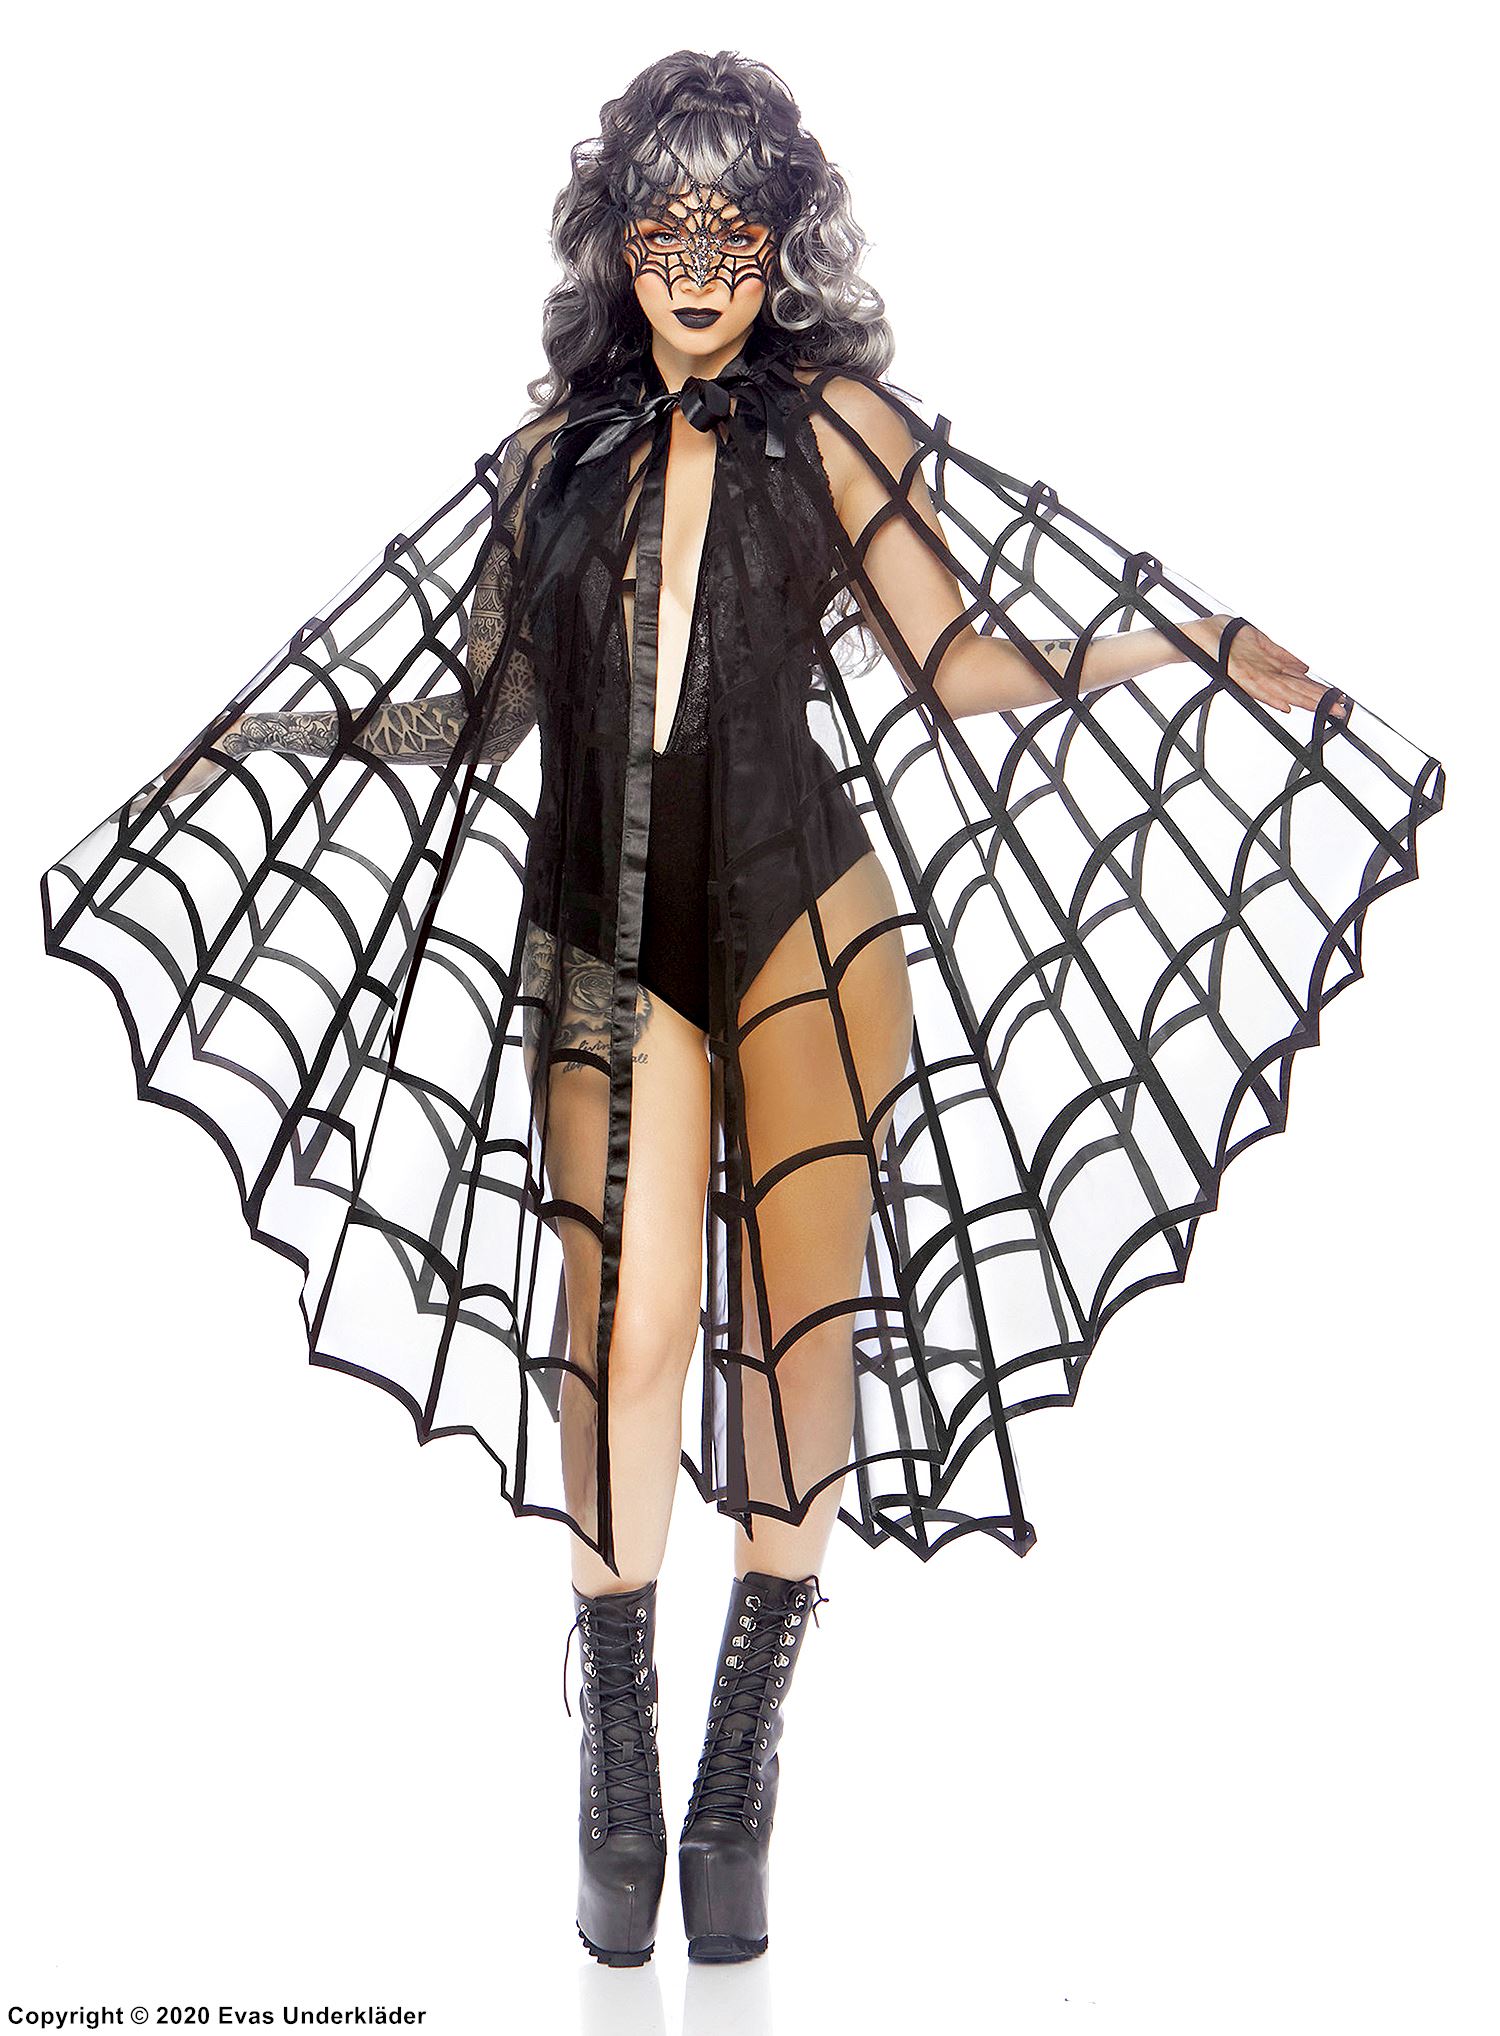 Costume cape, satin bow, spider web